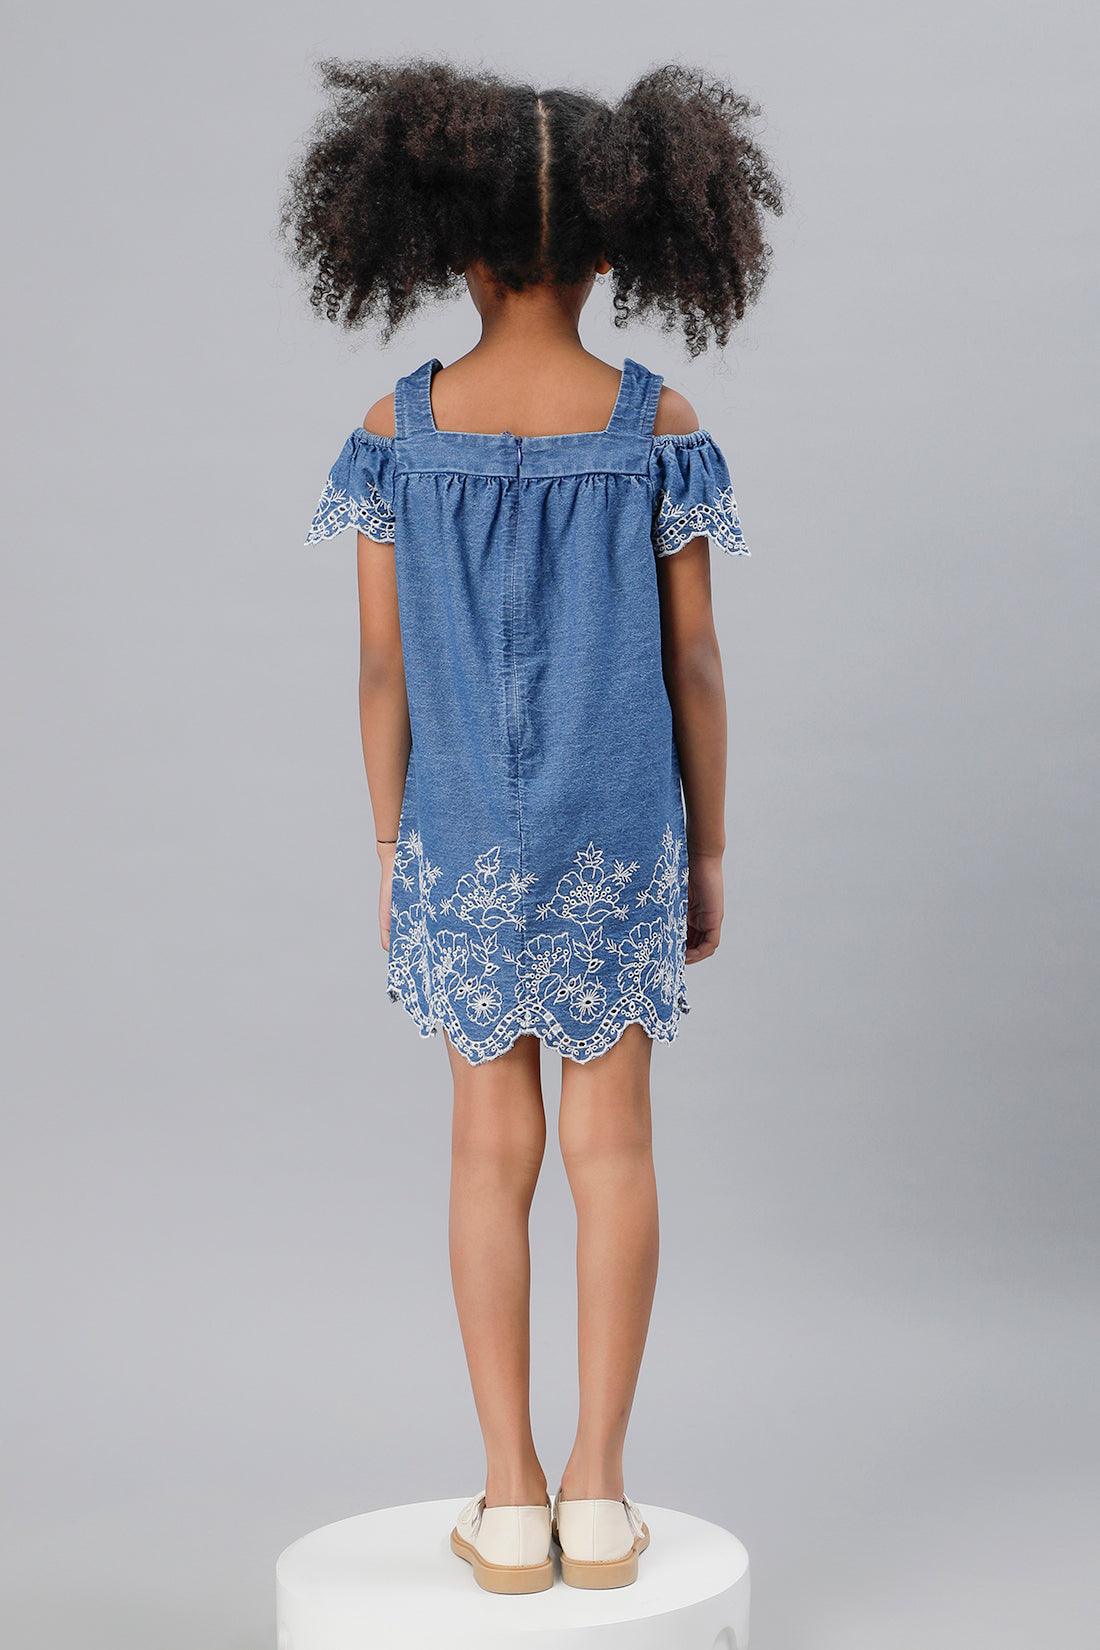 One Friday Girls Blue Cold-Shoulder Embroidered Dress